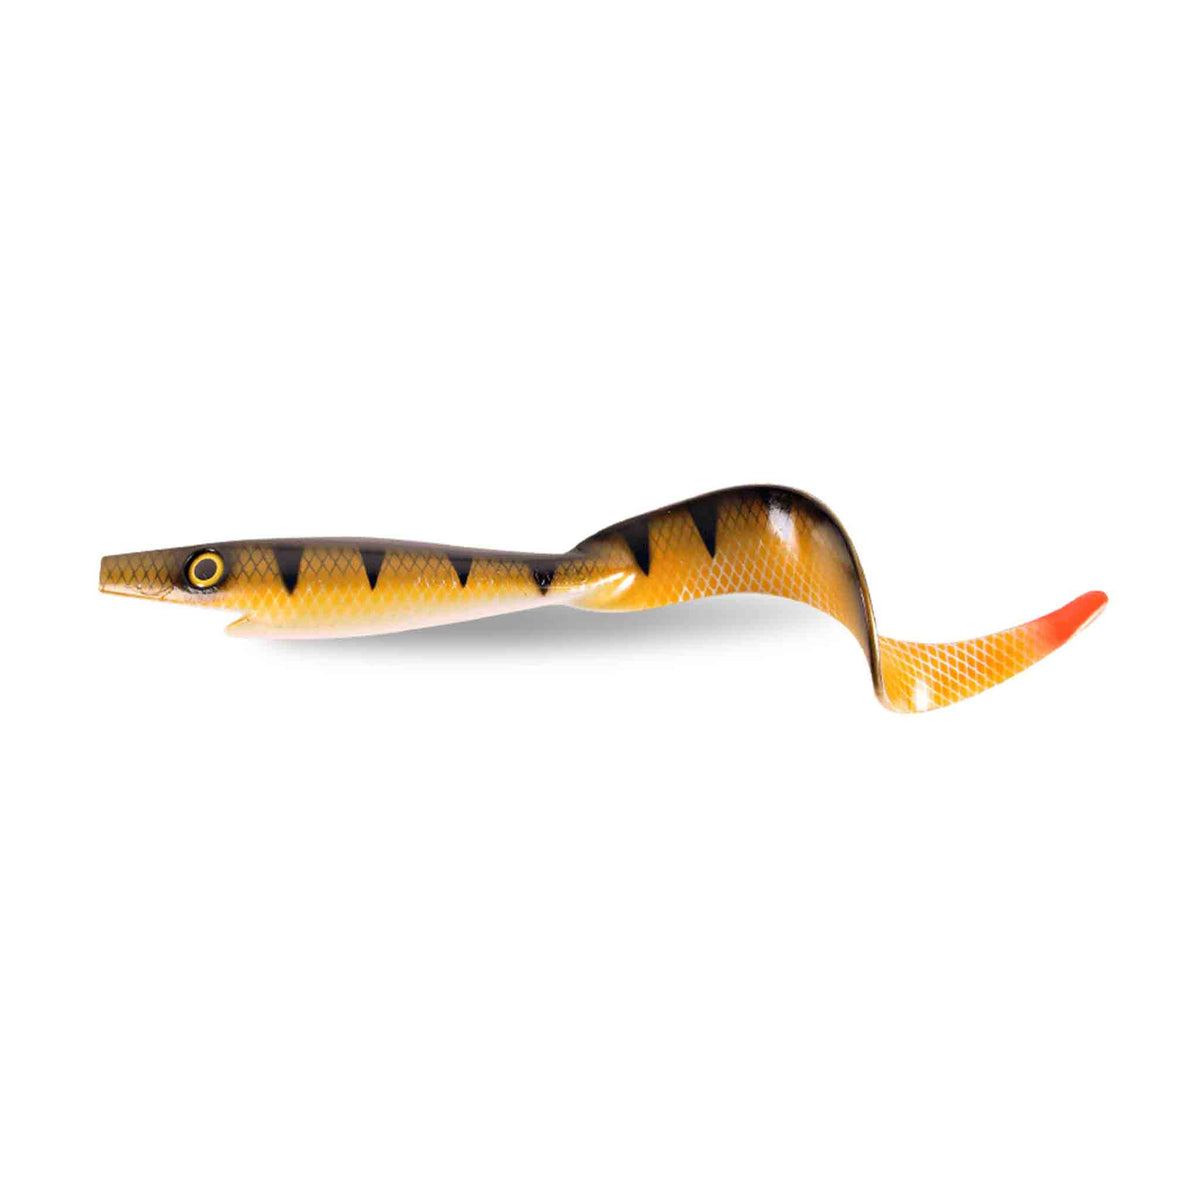 Gator Catfish 45 Swimbait | Pike & Musky lures MonsterCat UV